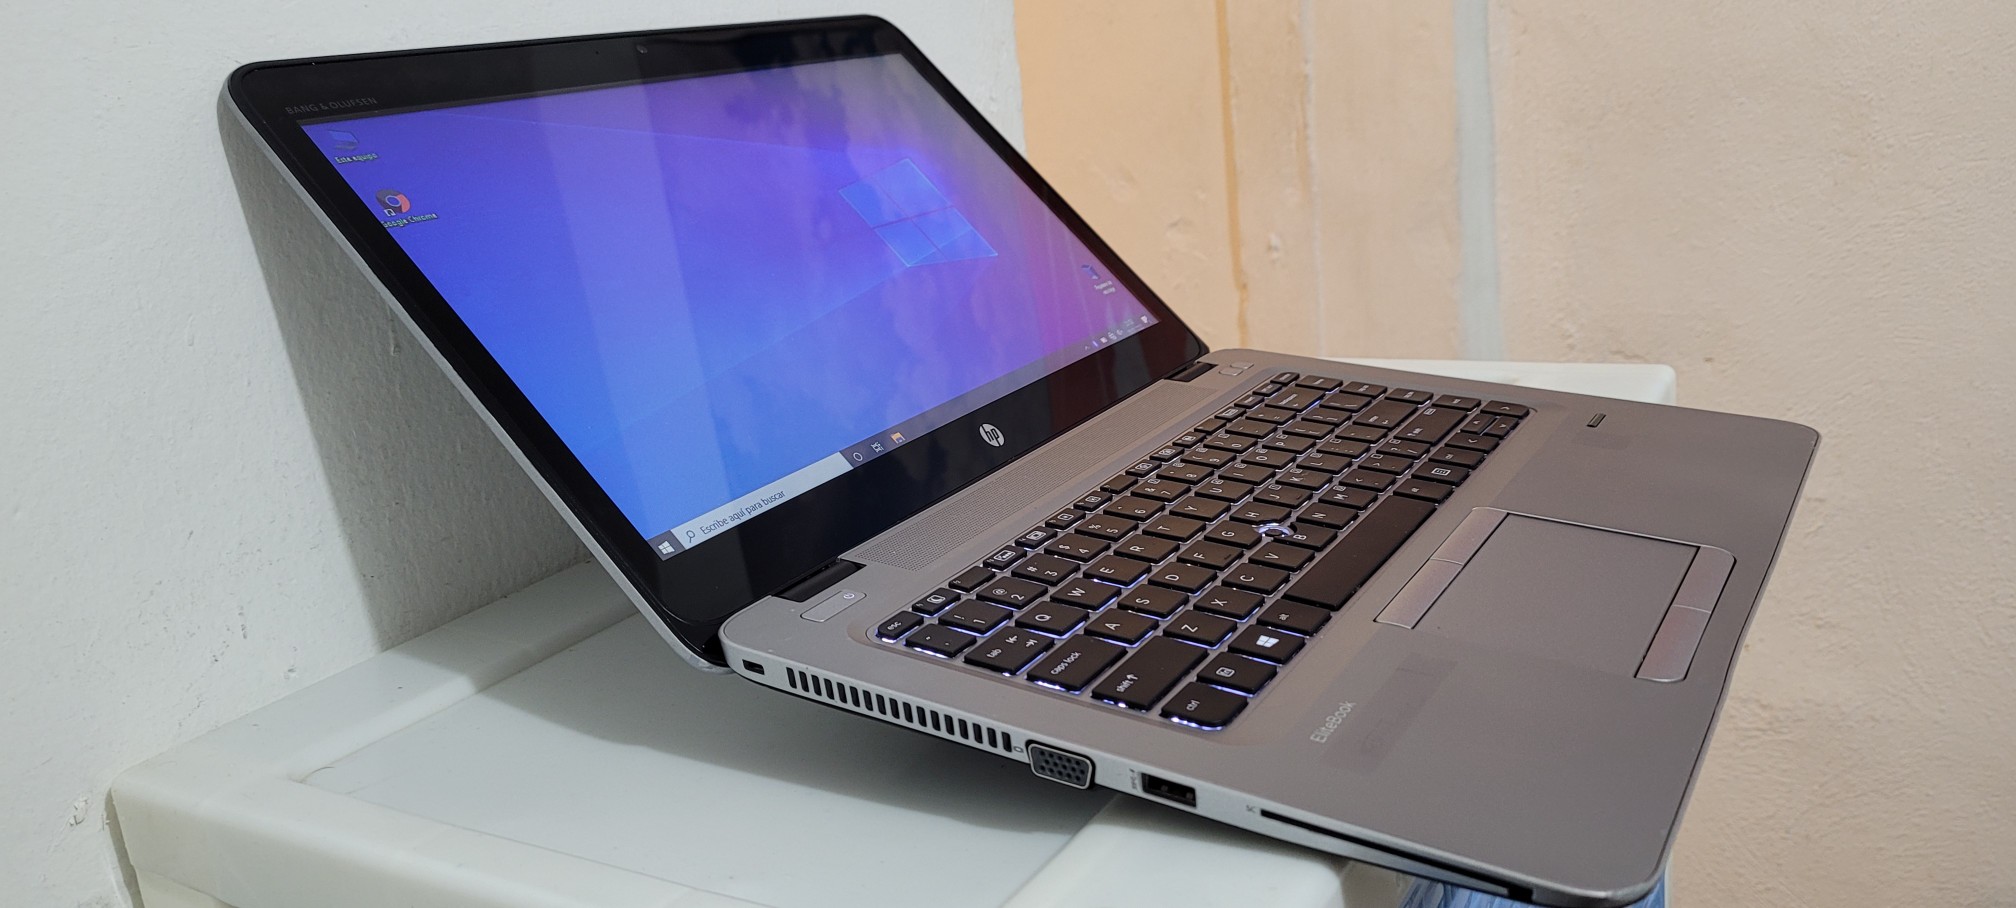 computadoras y laptops - Laptop hp Slim G3 14 Pulg Core i5 6ta Gen Ram 8gb ddr4 Disco 500gb Full 1